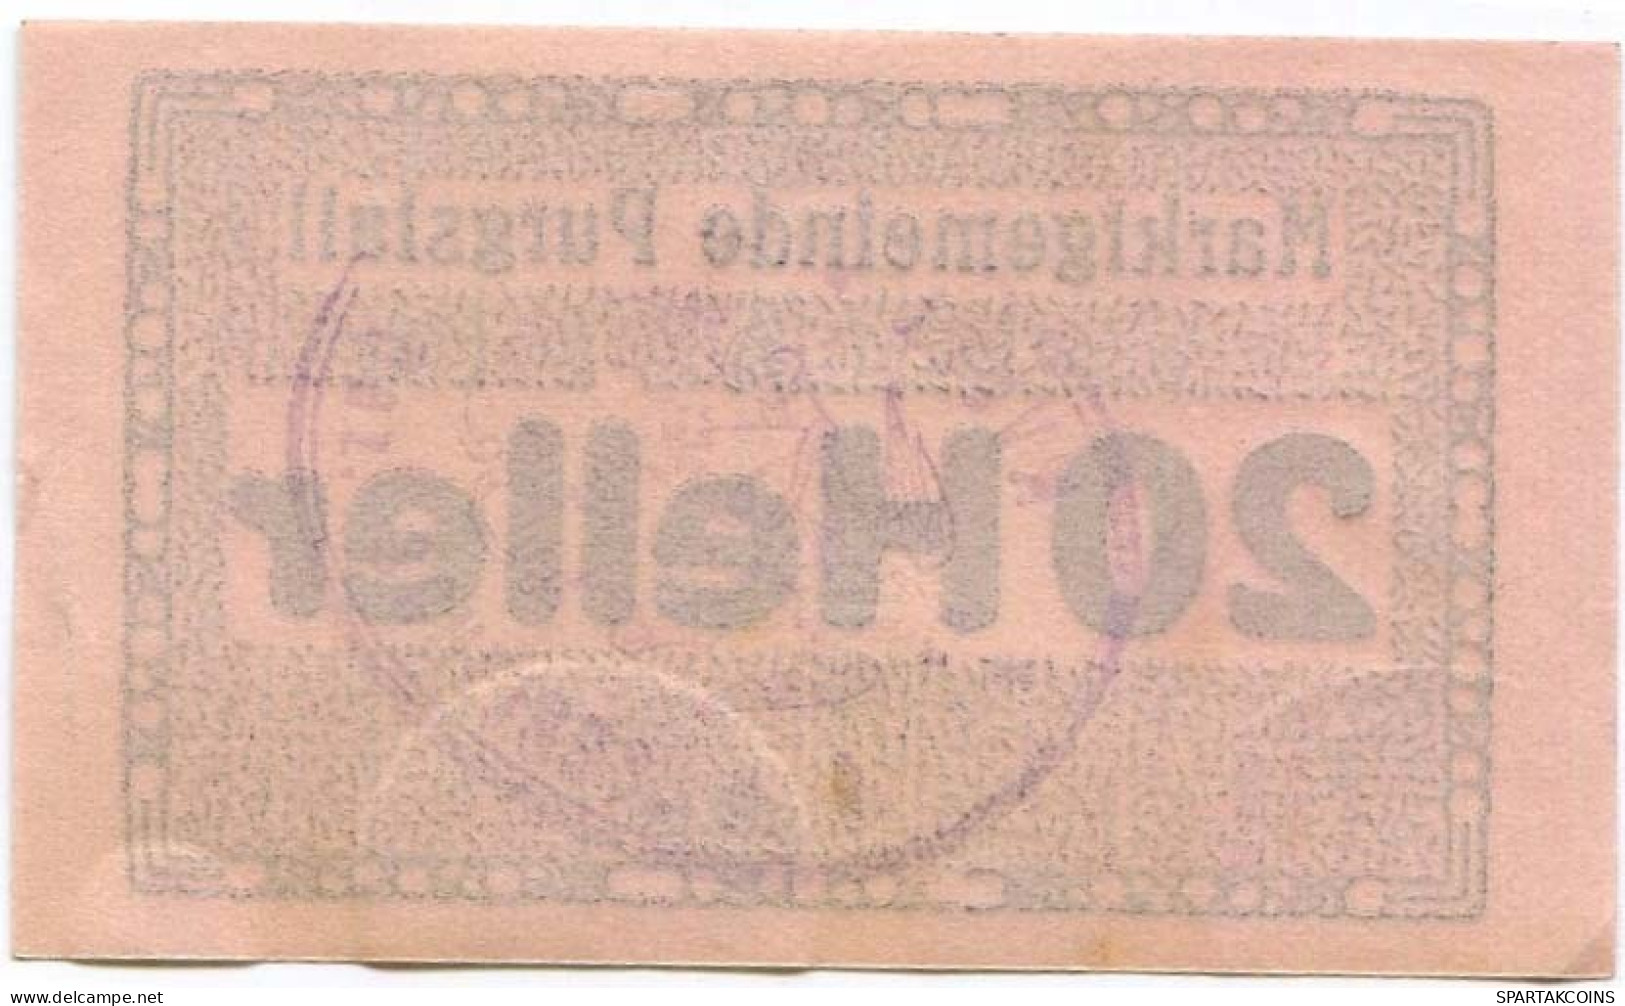 20 HELLER 1920 Stadt PURGSTALL AN DER ERLAUF Niedrigeren Österreich Notgeld Papiergeld Banknote #PL953 - [11] Local Banknote Issues